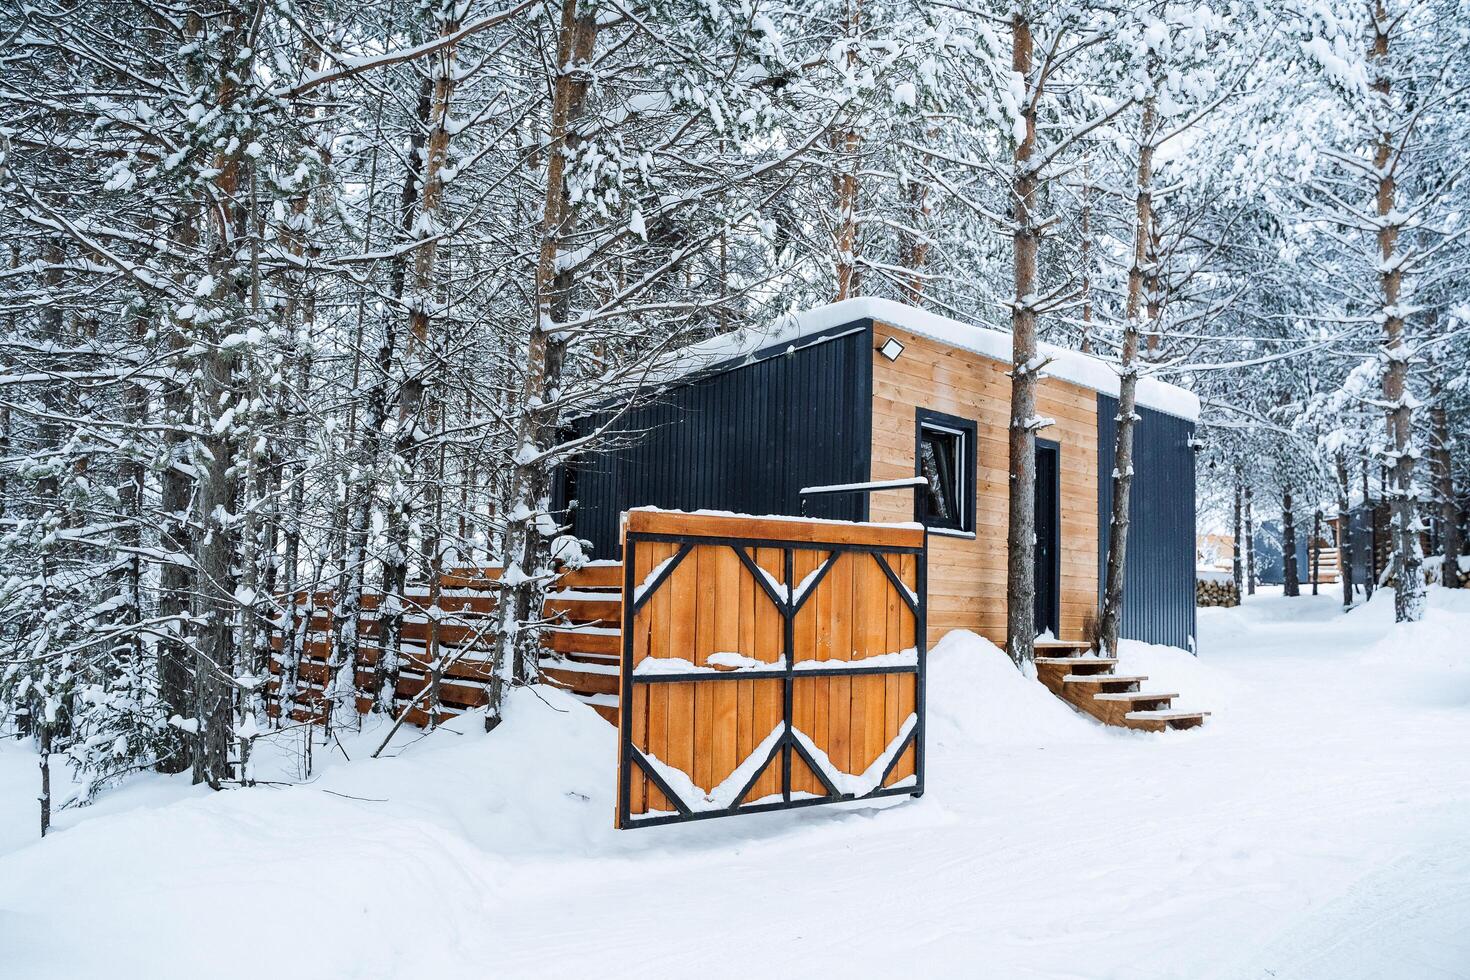 país casa hecho de madera en el bosque. visitando el cabaña en invierno. de madera barandillas, paredes y cerca. bosque paisaje en el nieve foto